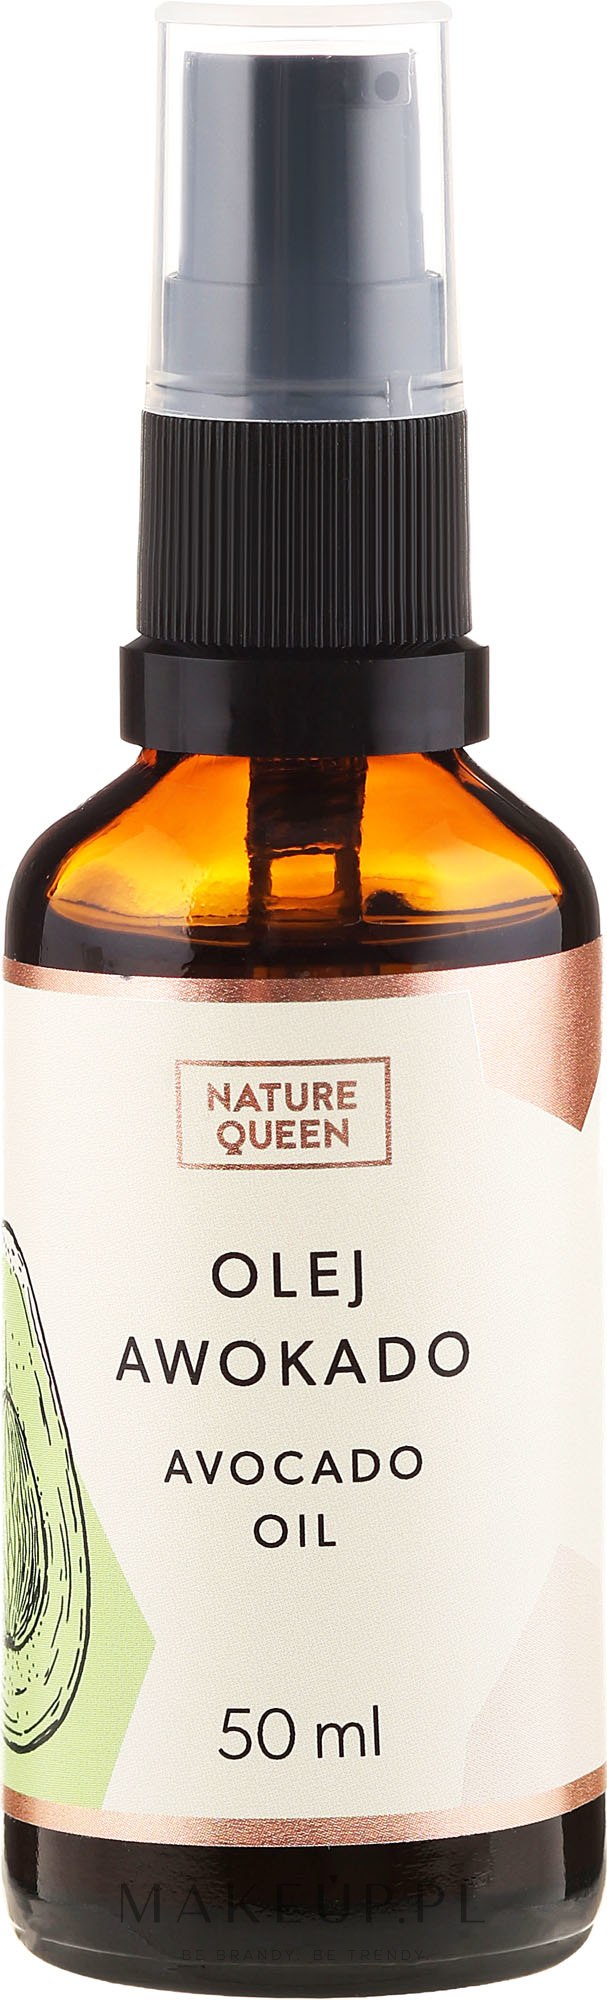 Olej awokado - Nature Queen Avocado Oil — Zdjęcie 50 ml